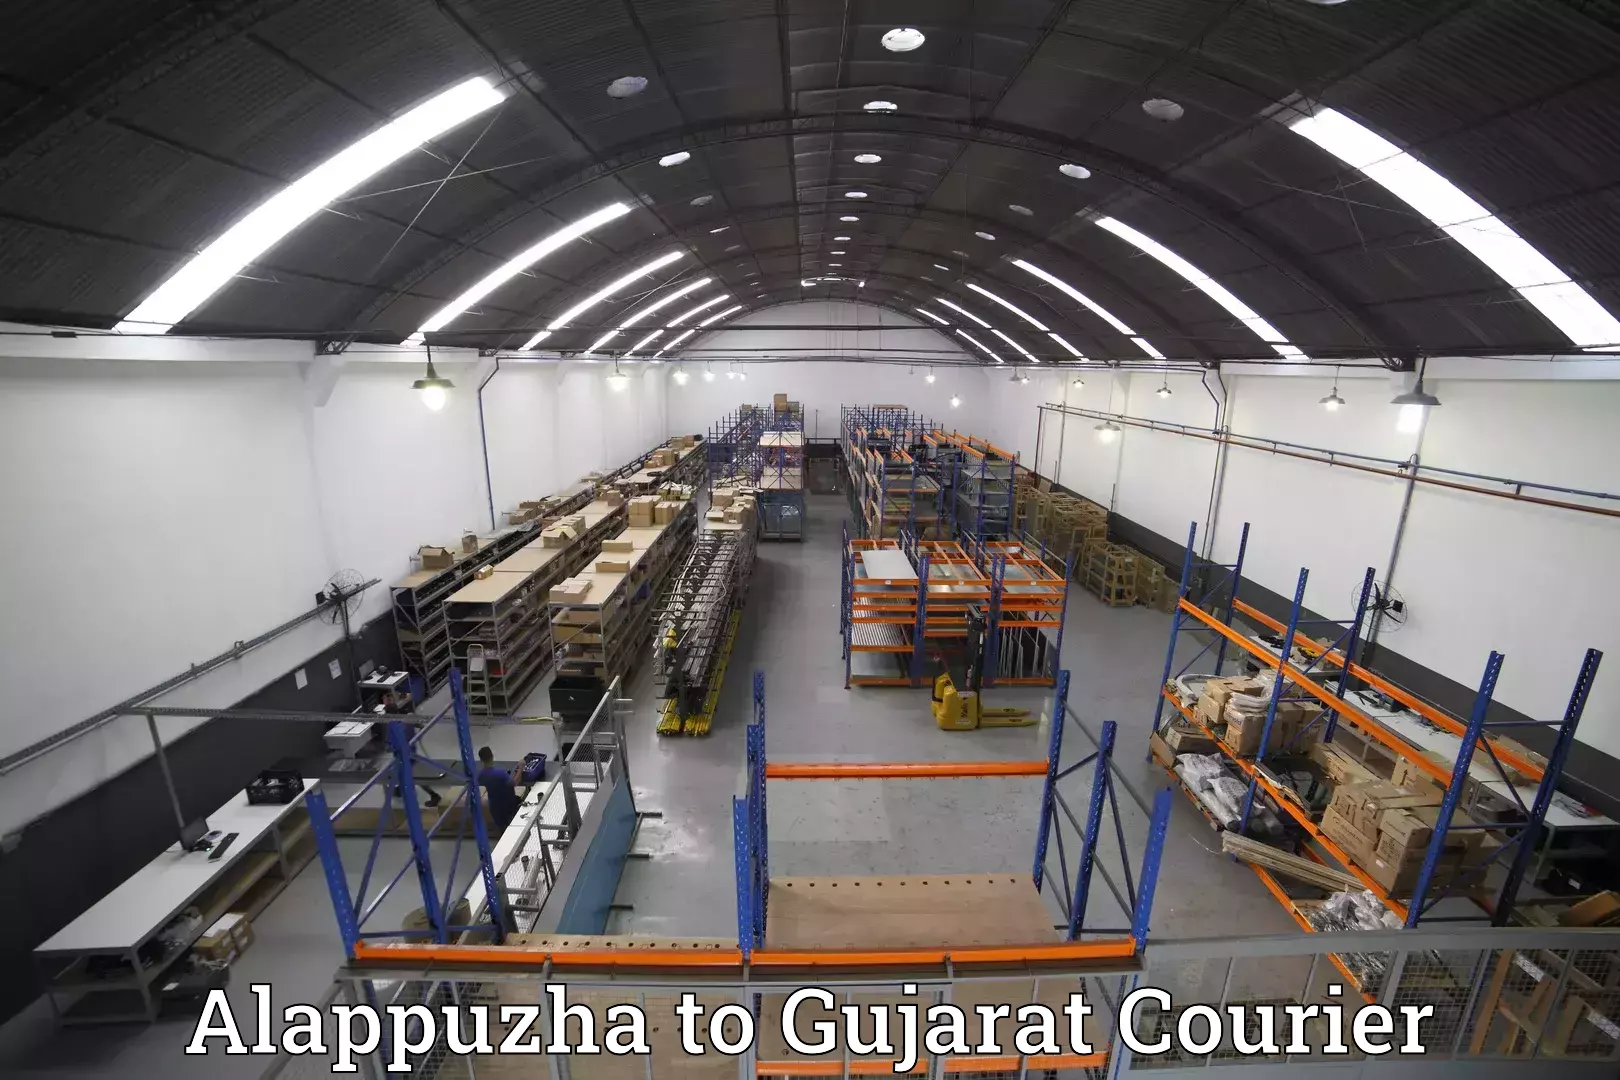 Luggage shipment specialists Alappuzha to Bavla